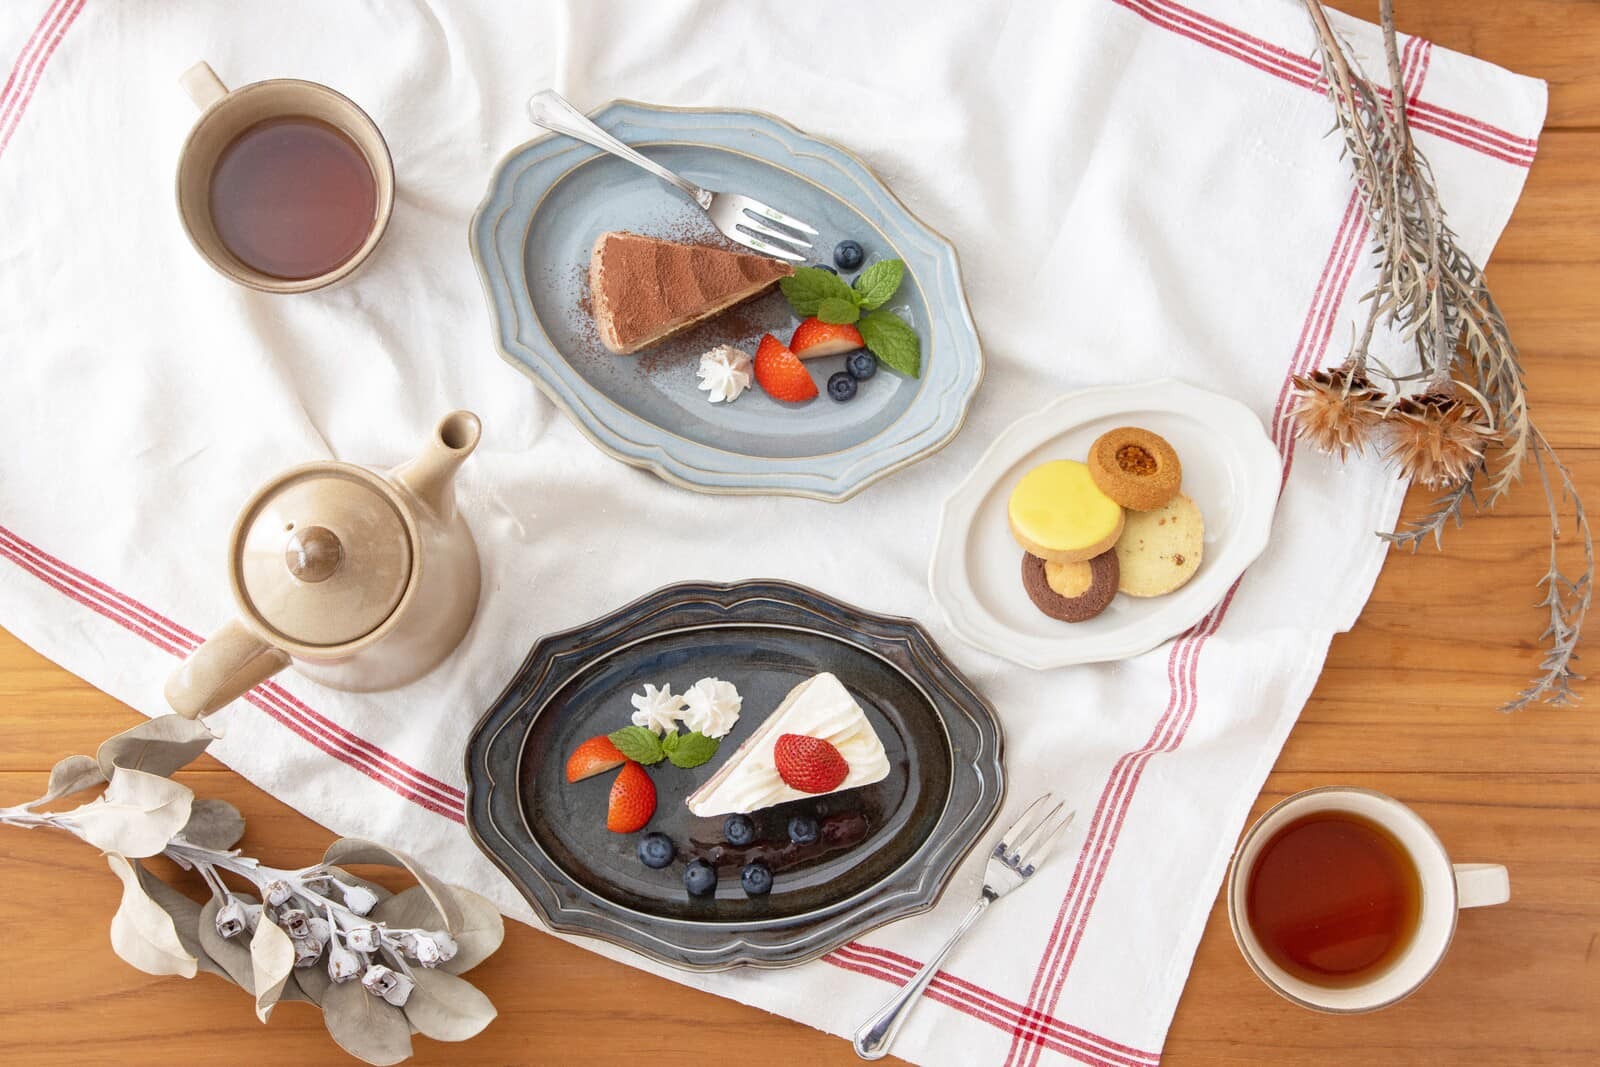 日本餐具【K-ai】Vanves 橢圓盤 美濃燒餐盤 23cm 日本製瓷盤 (2)